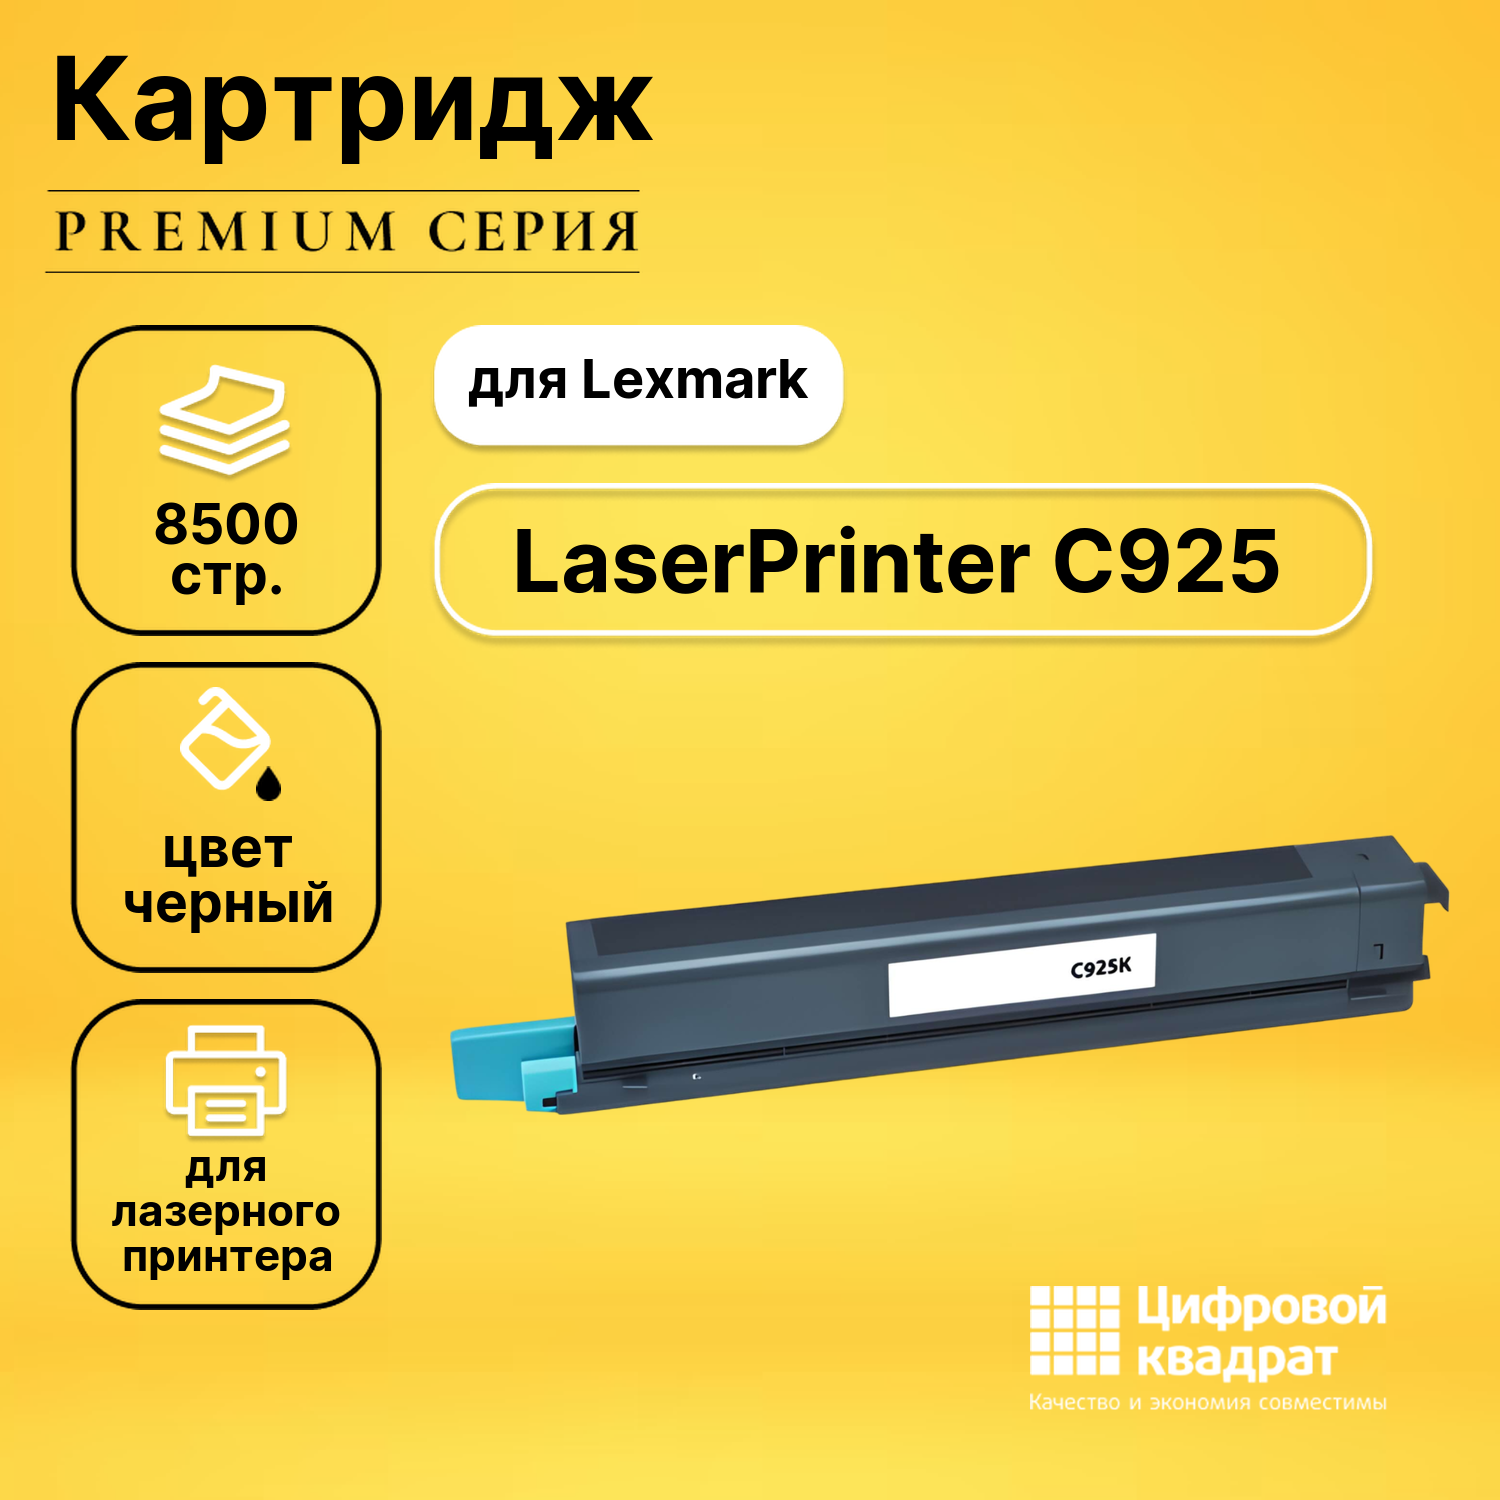 Совместимый картридж DS LaserPrinter C925, увеличенный ресурс